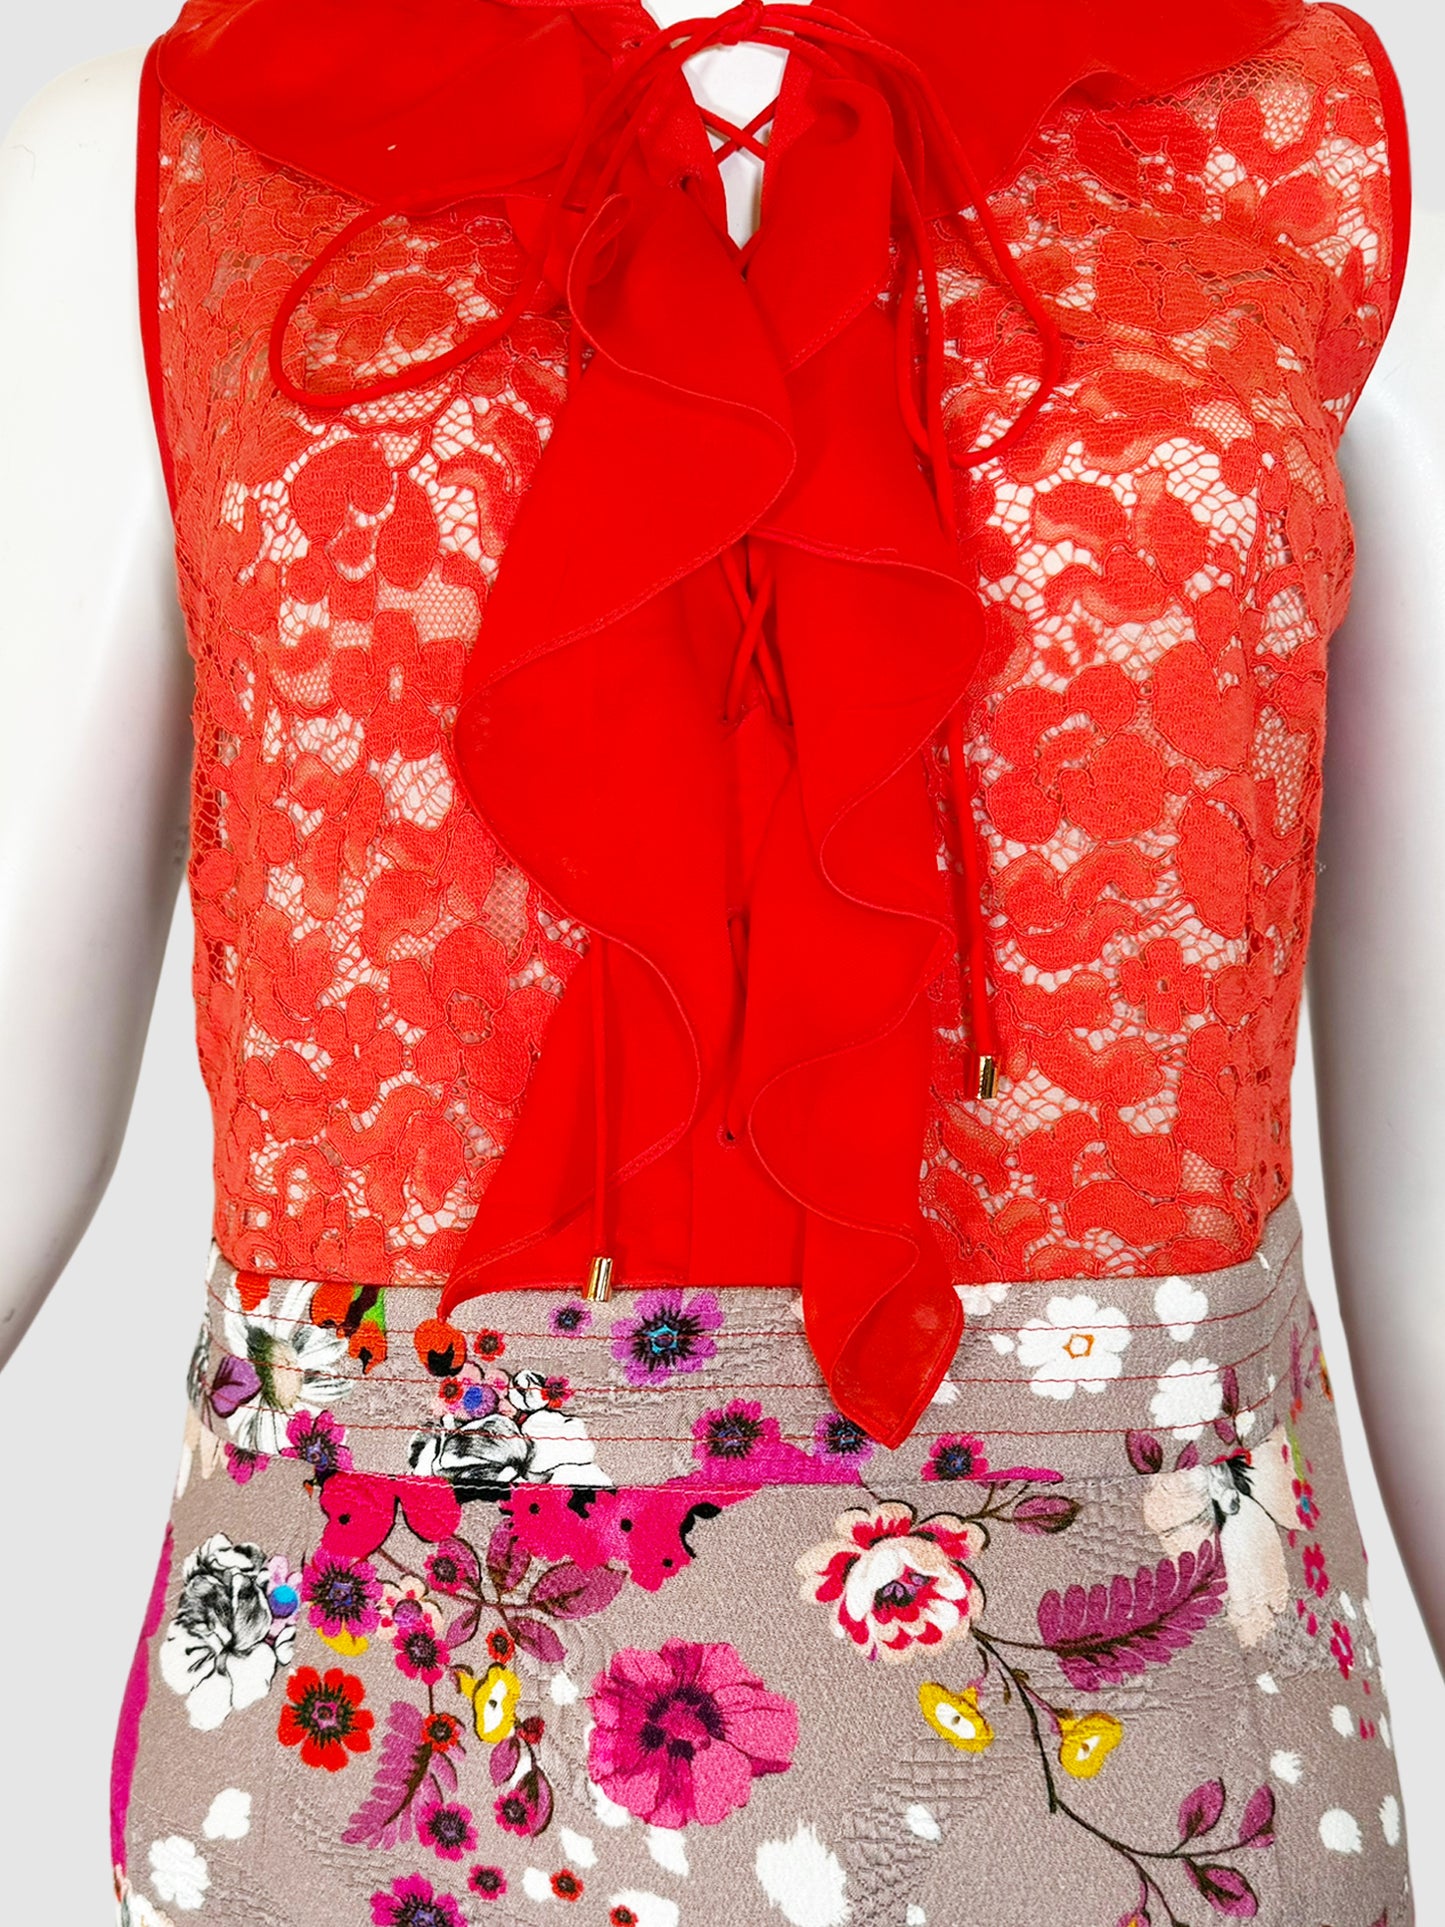 Lace Floral Print Dress - Size 6/8